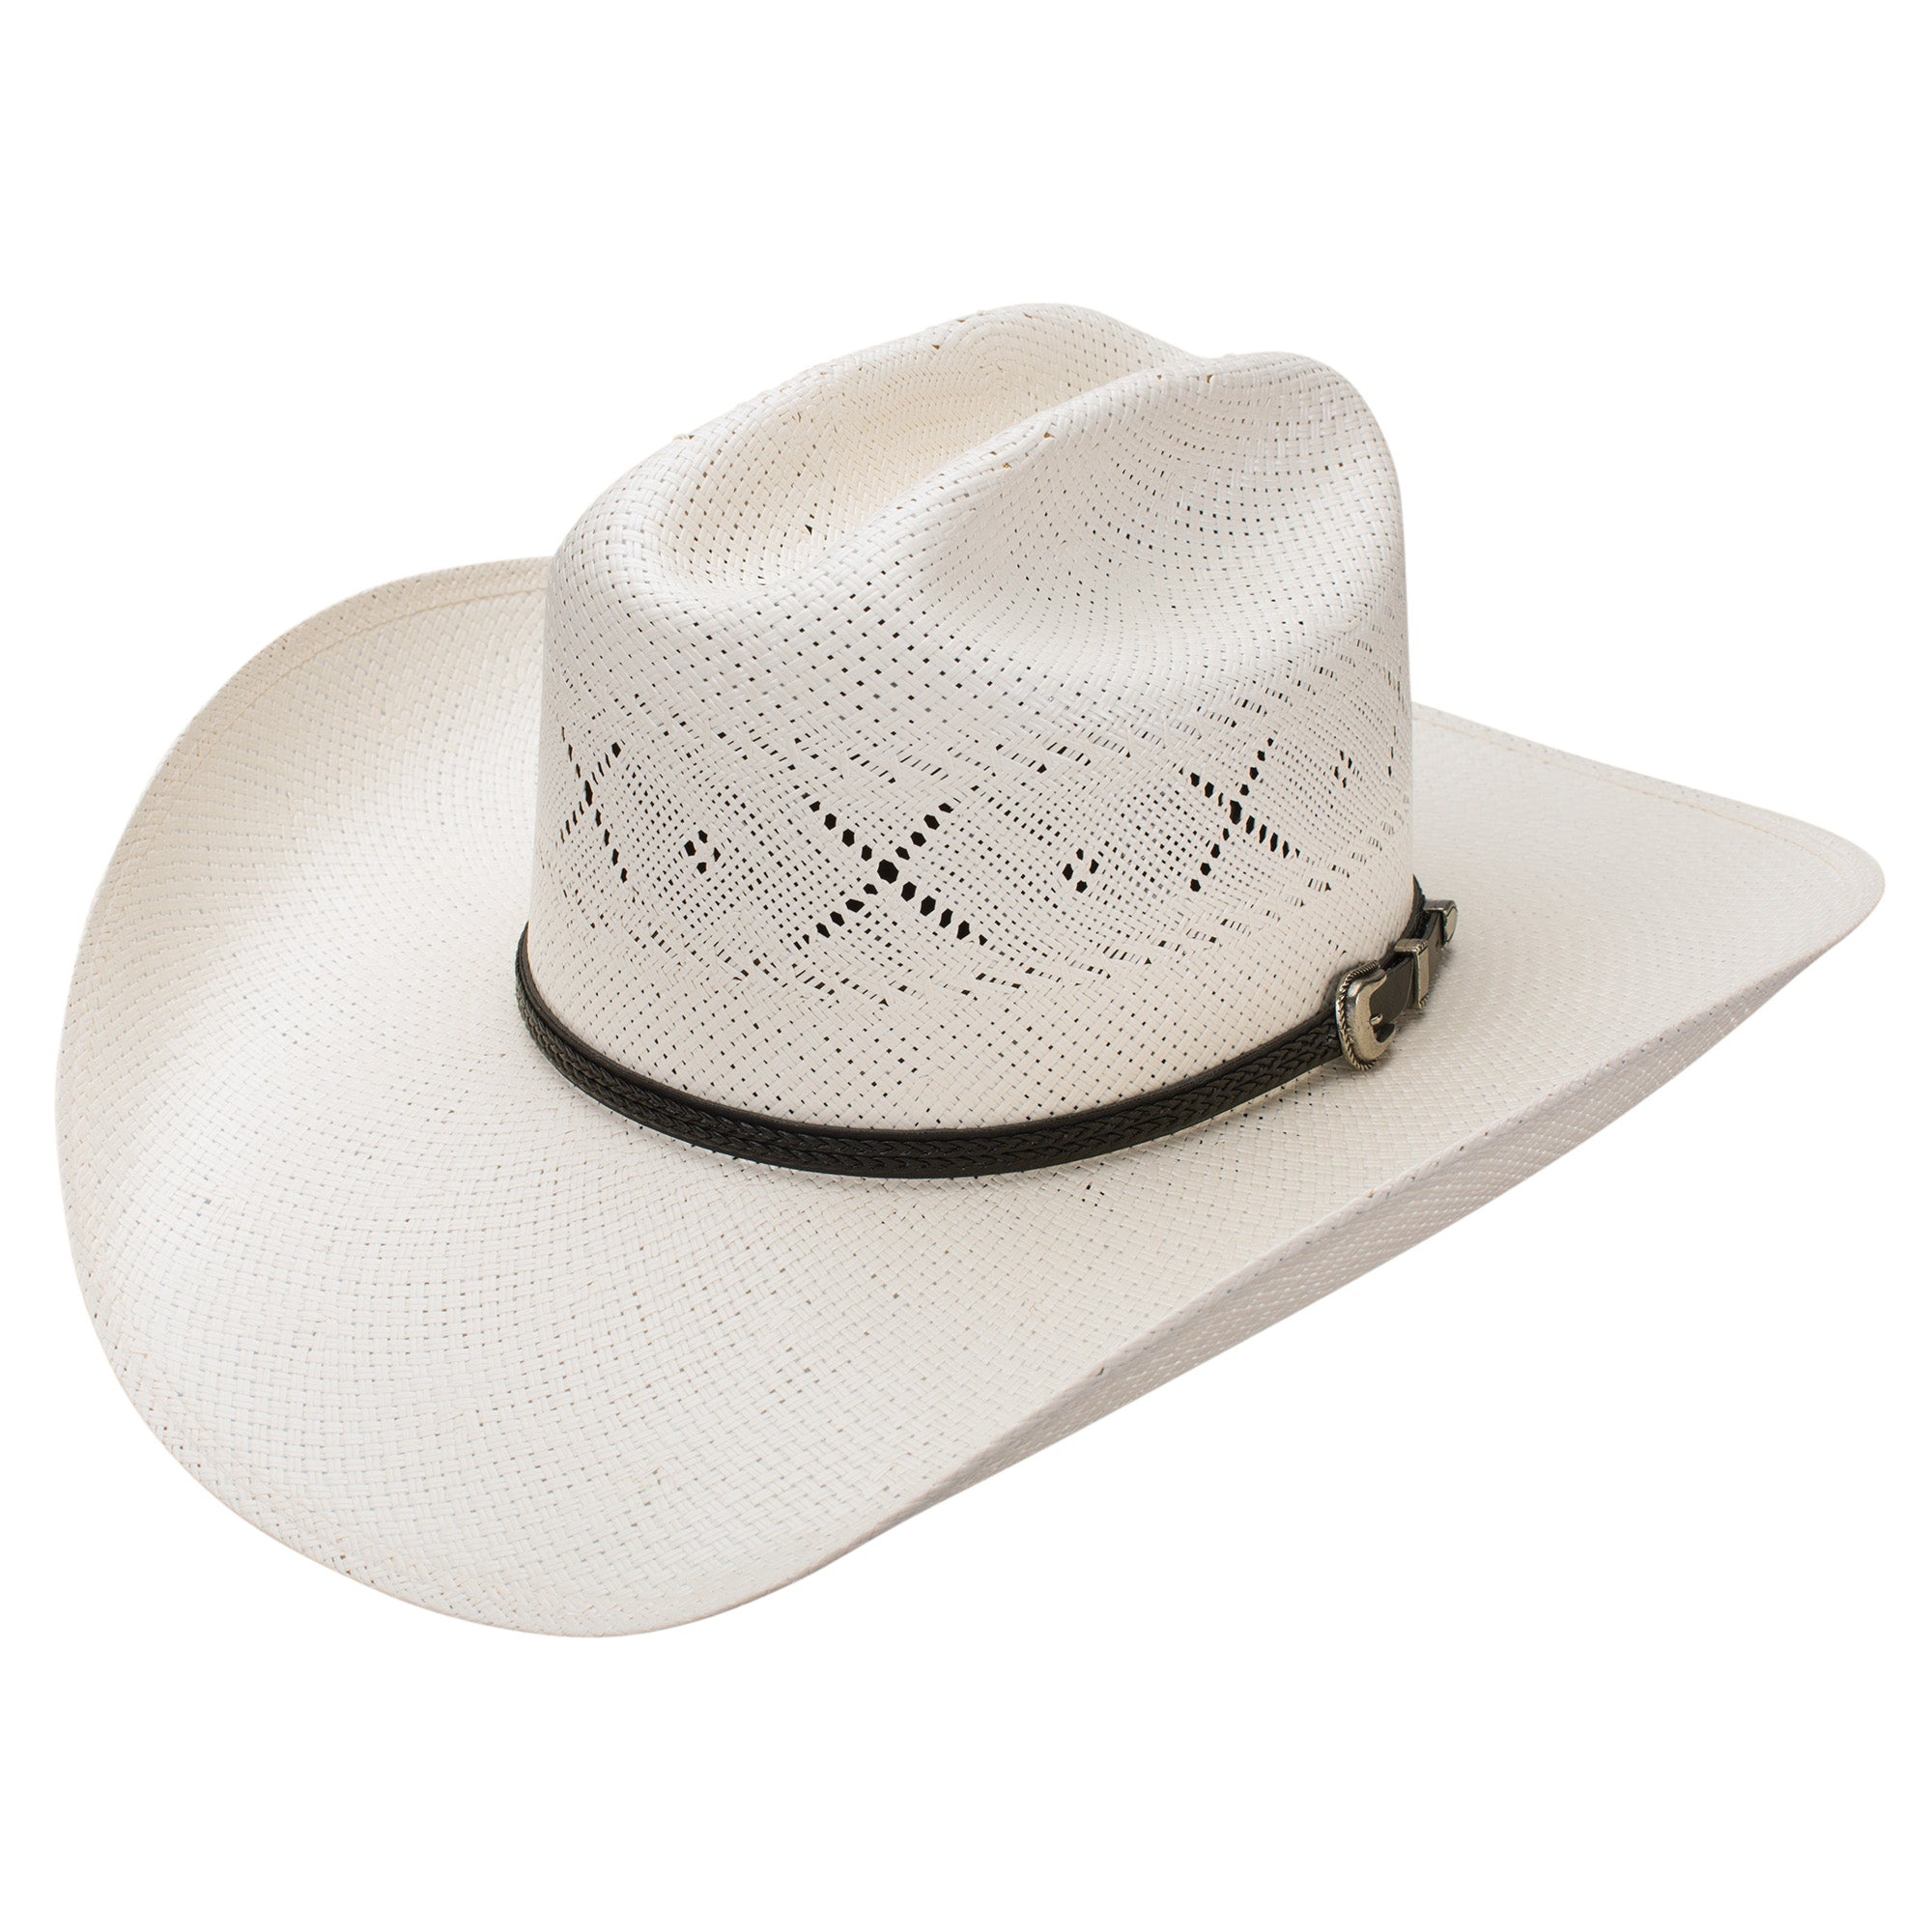 All My Ex's- straw cowboy hat